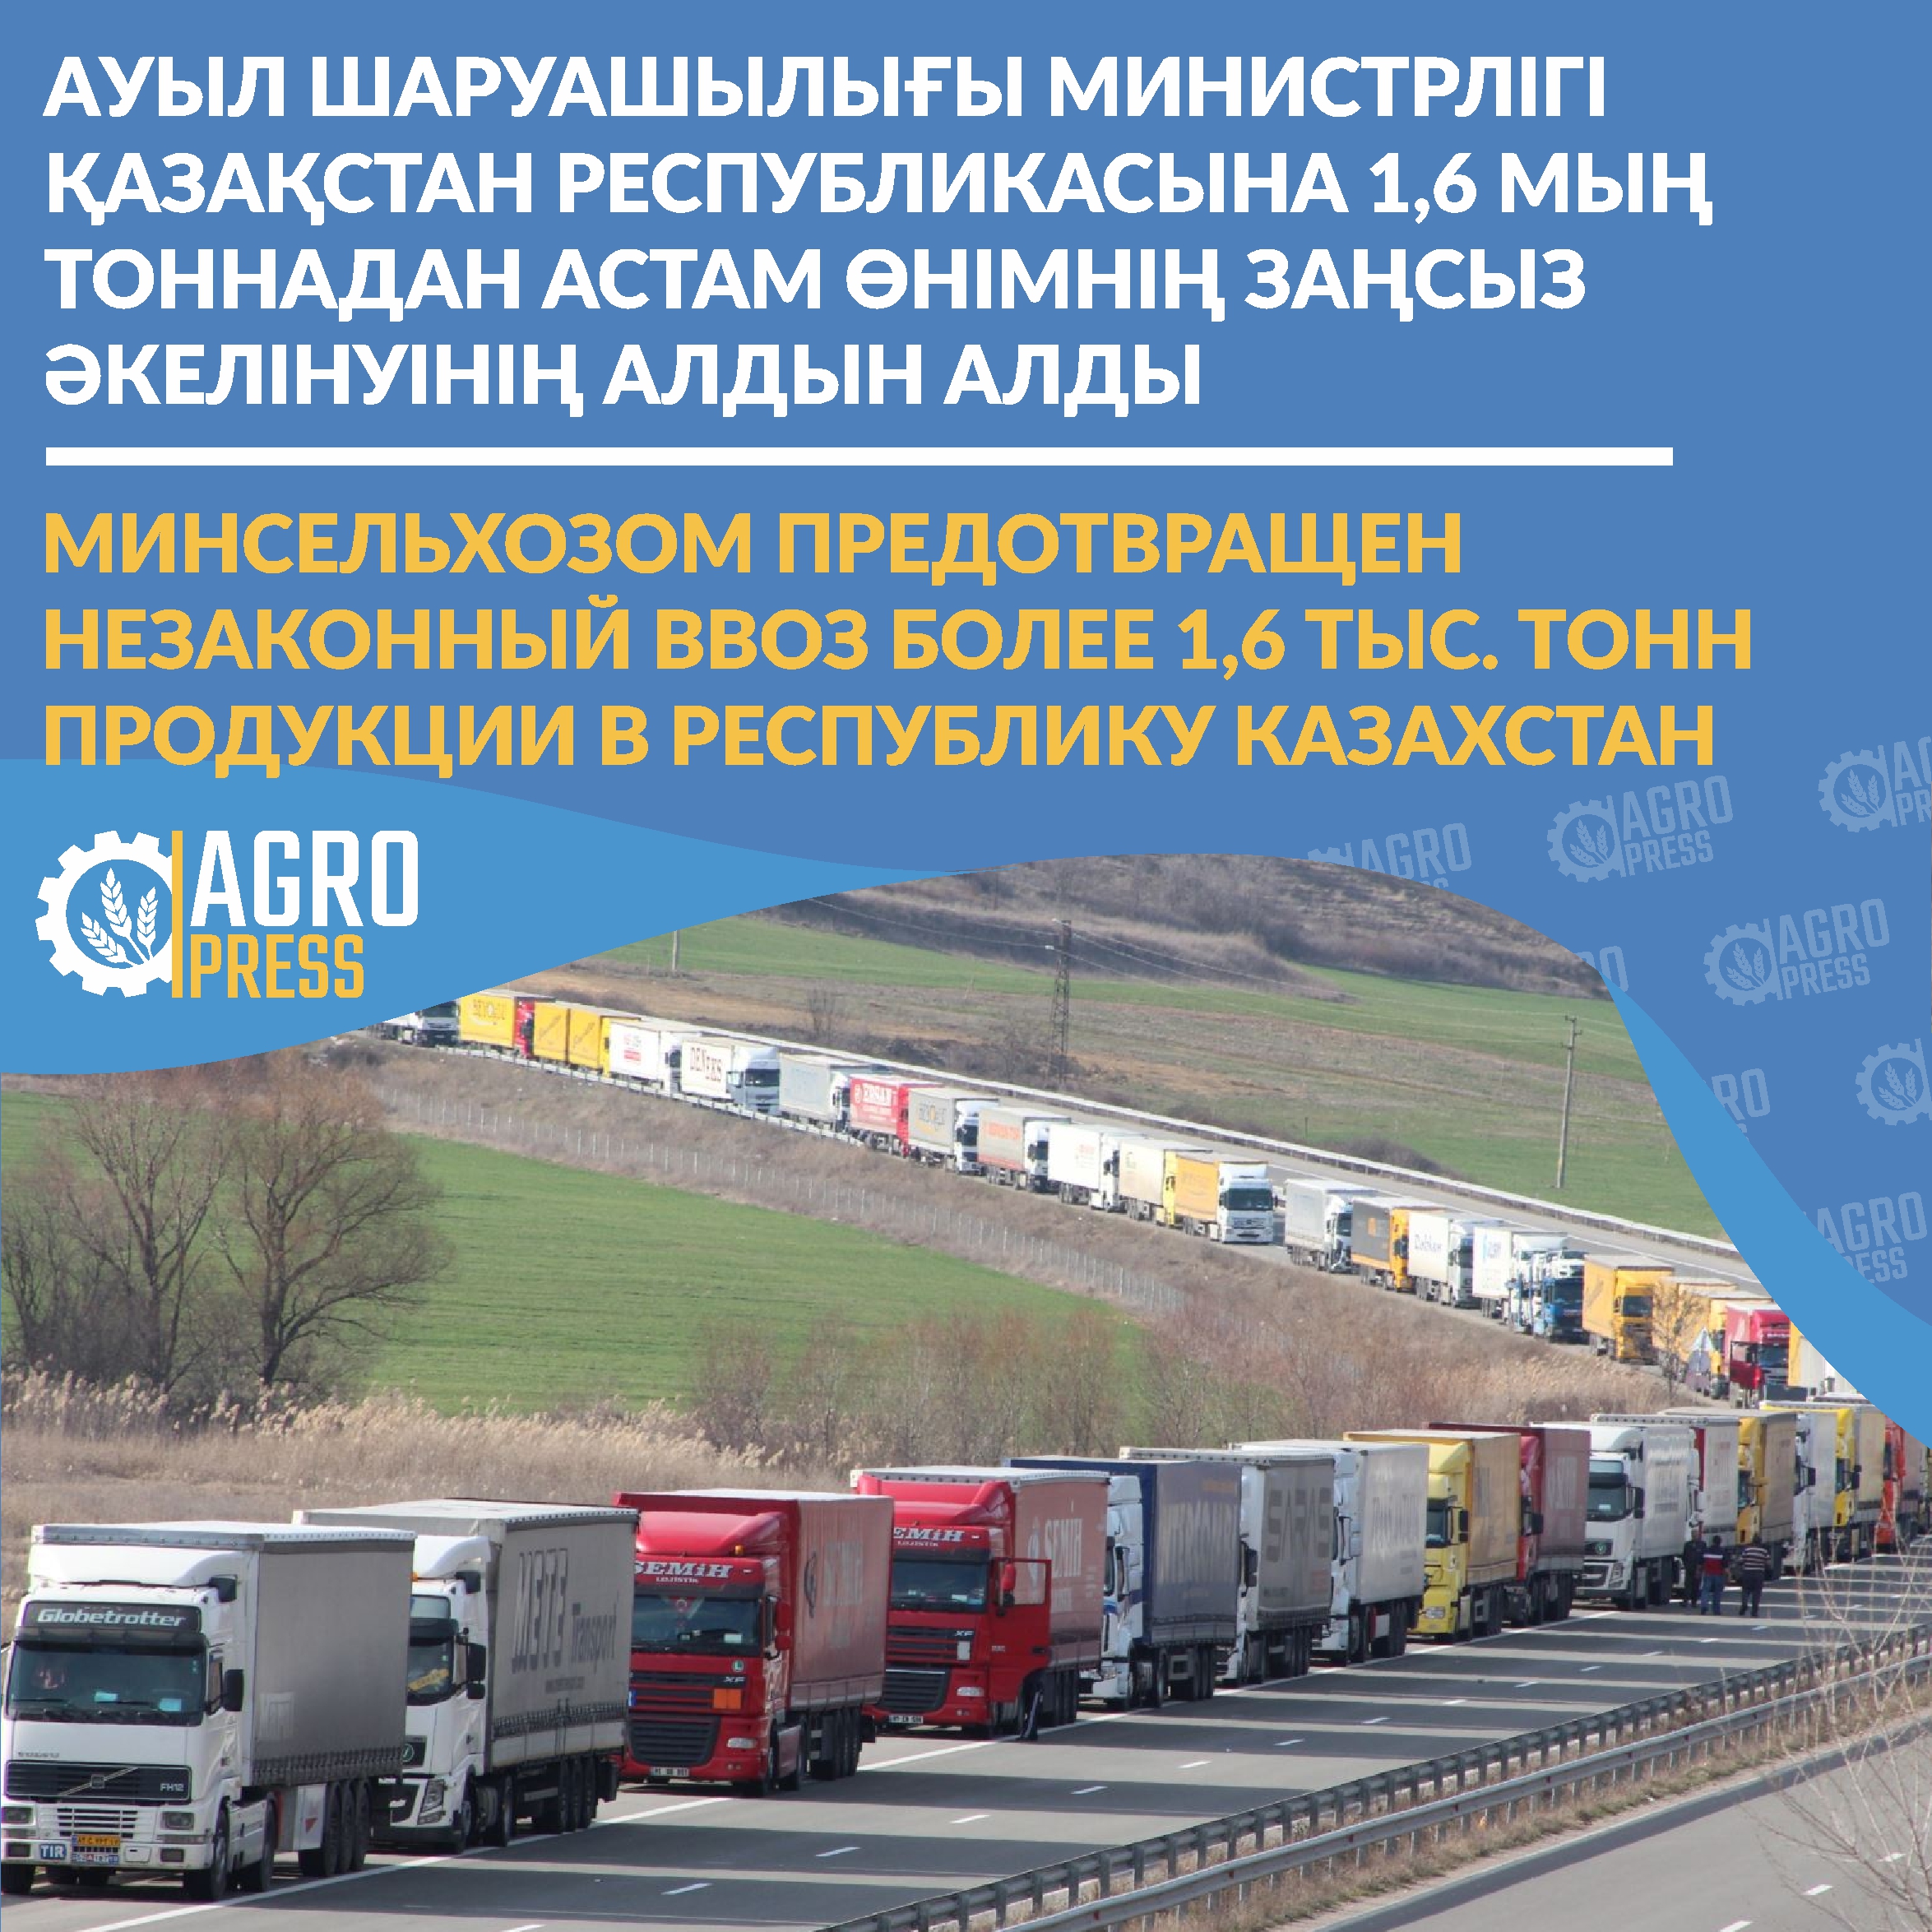 Минсельхозом предотвращен незаконный ввоз более 1,6 тыс. тонн продукции в Республику Казахстан